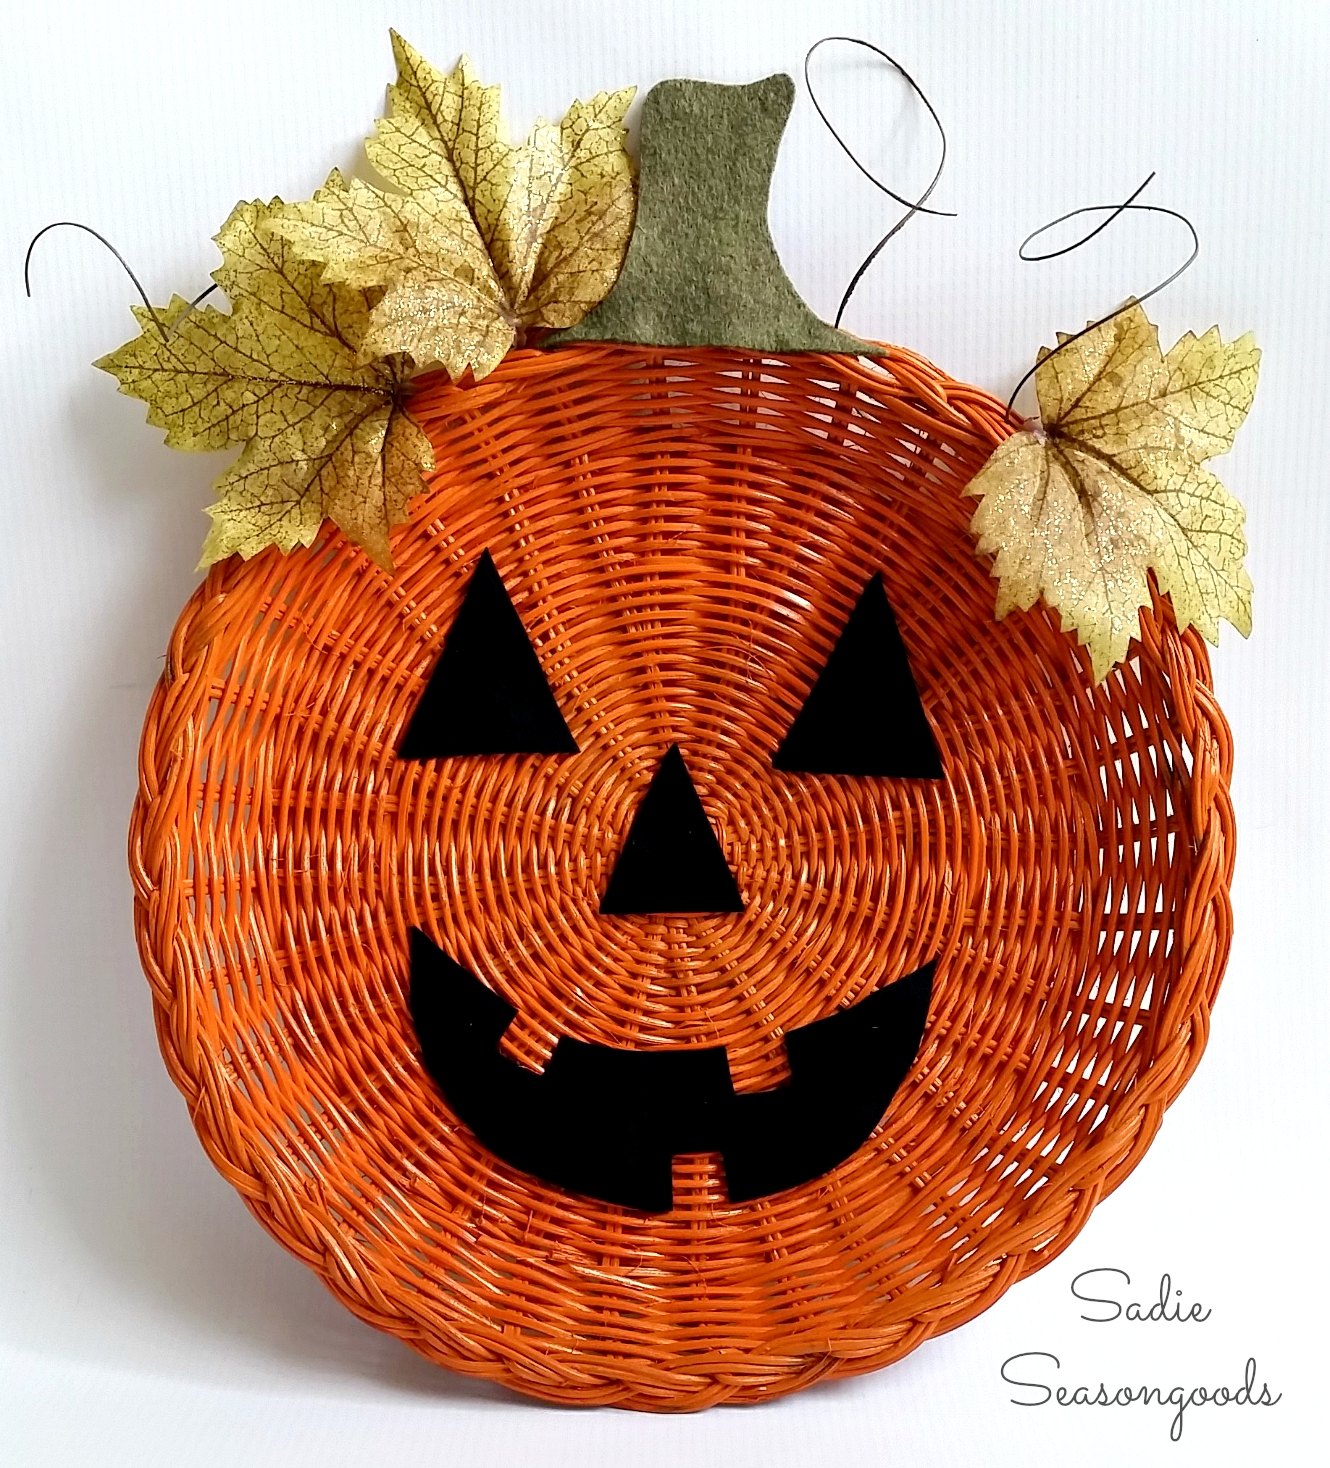 Wicker rattan charger paper plate holder pumpkin jack o lantern door hanger halloween sadie seasongoods